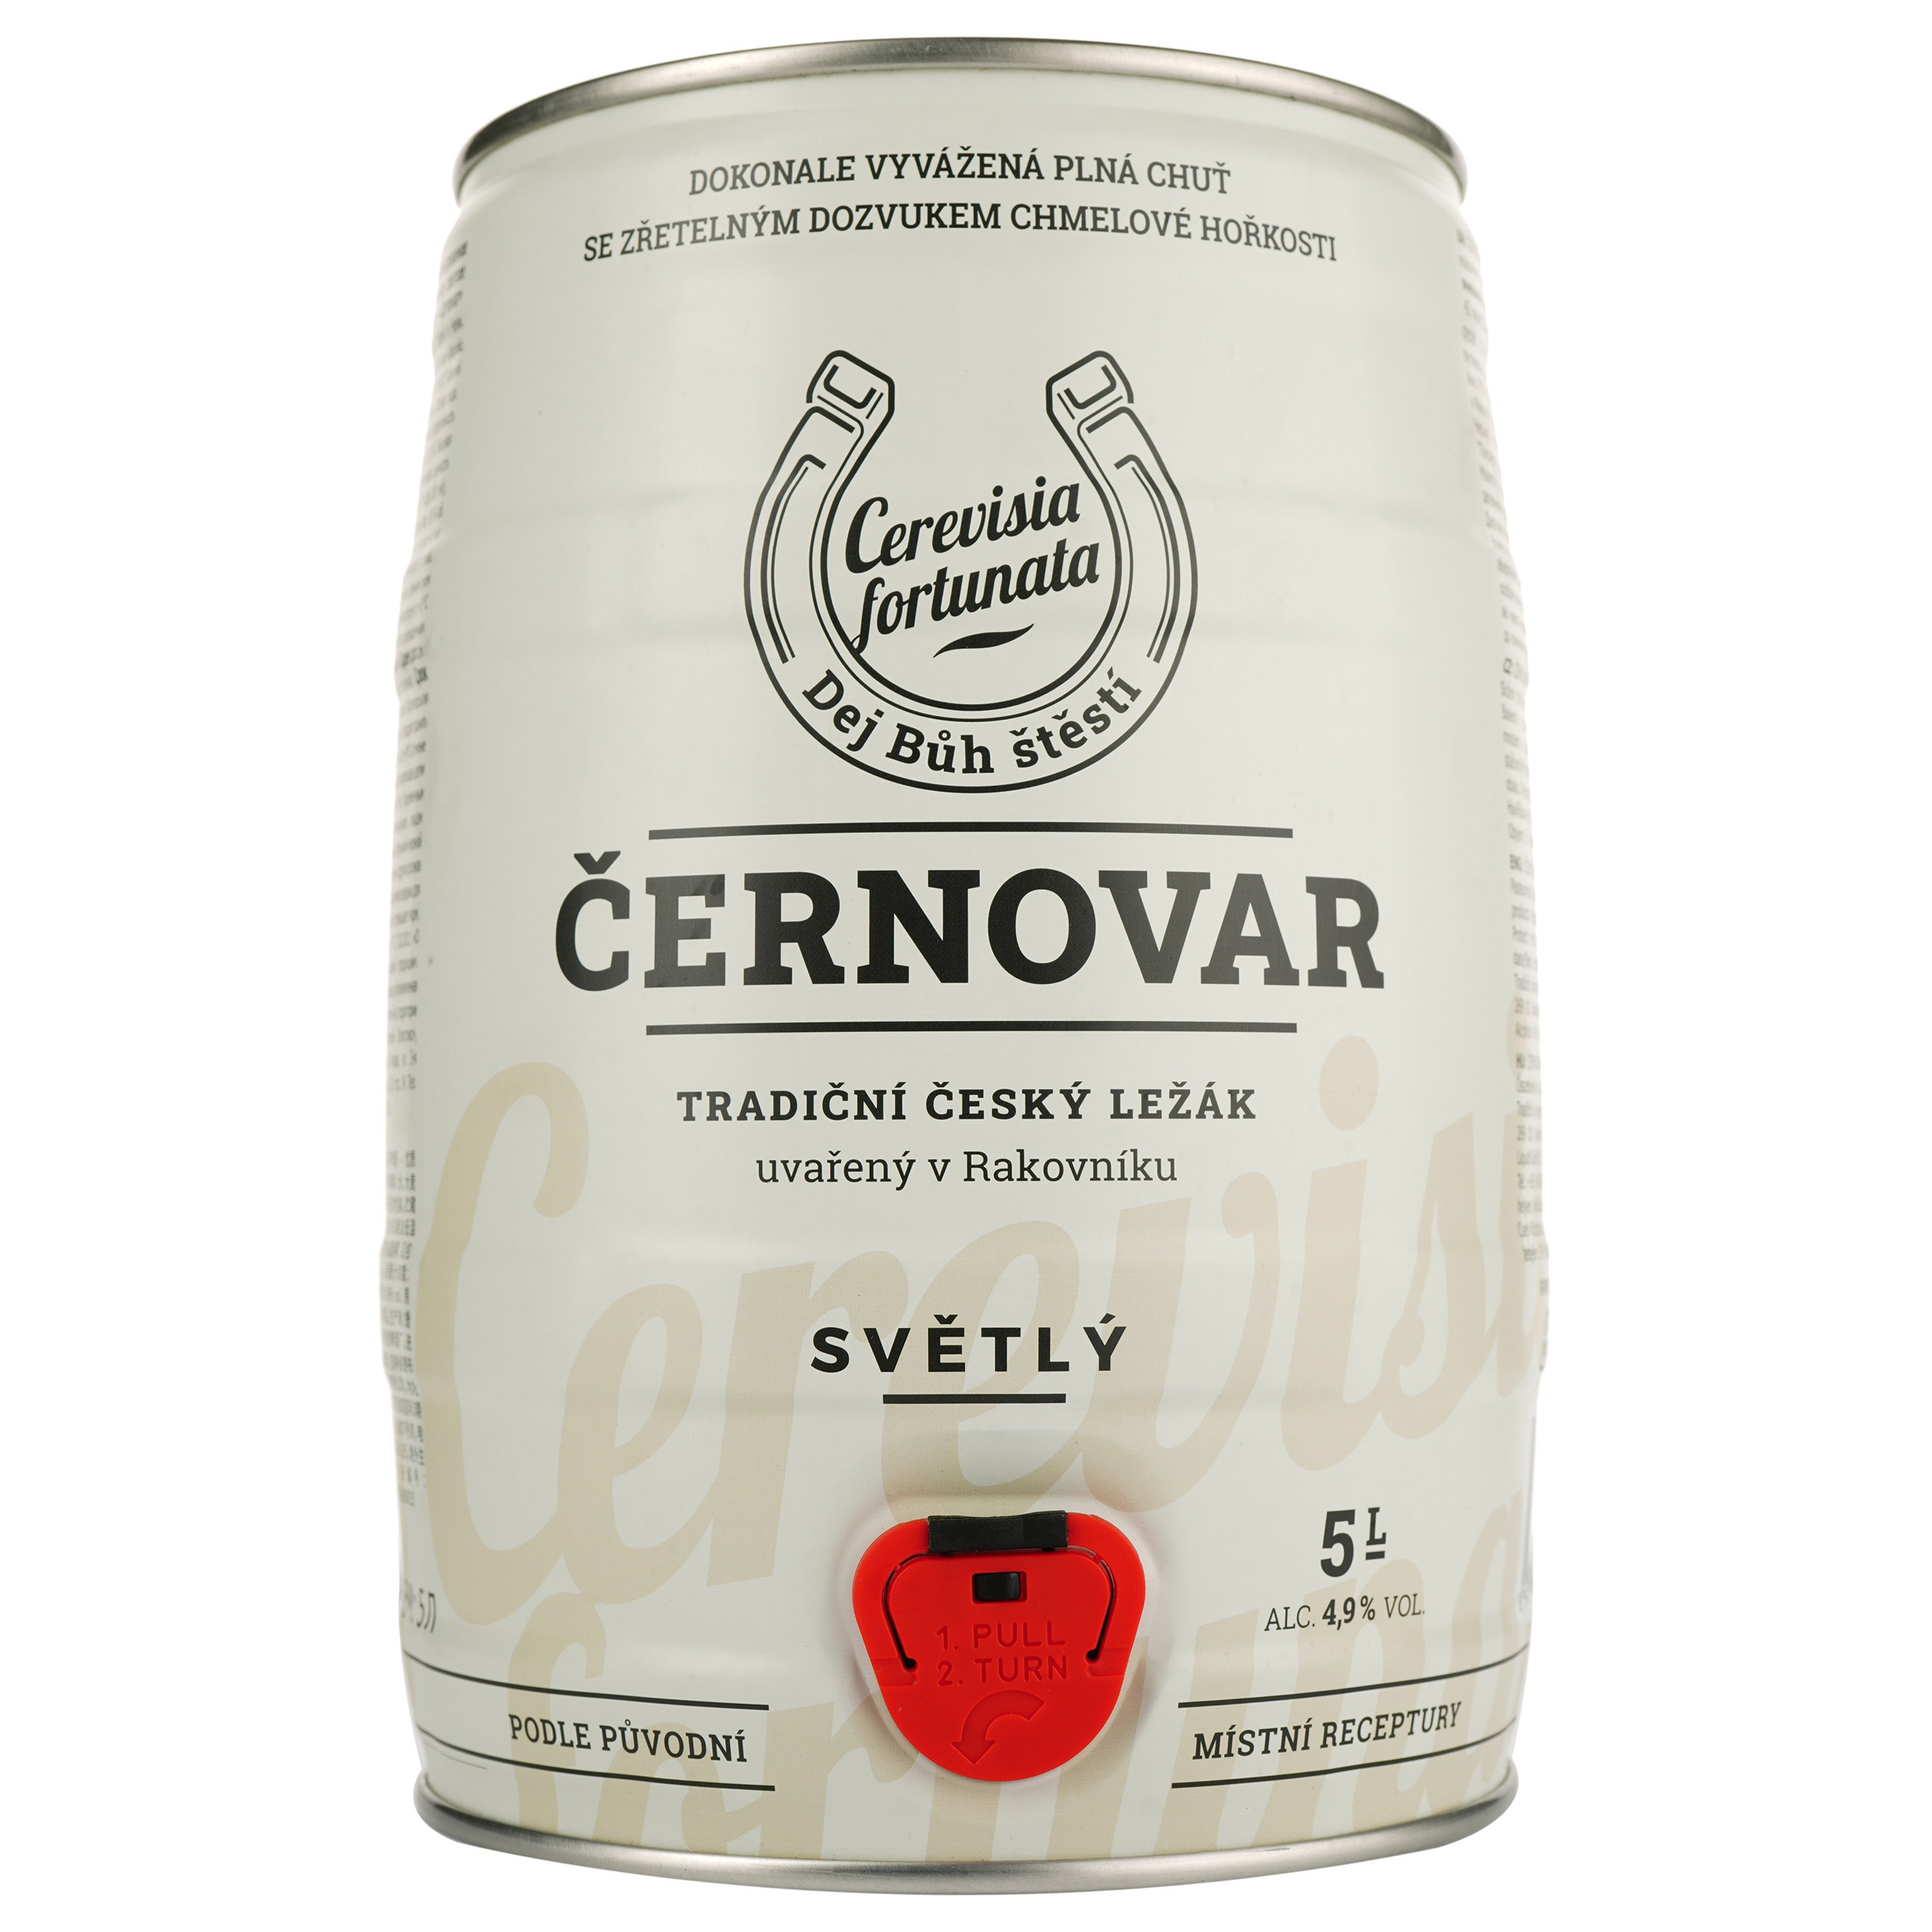 Пиво Cernovar светлое, 4.9%, ж/б, 5 л - фото 1